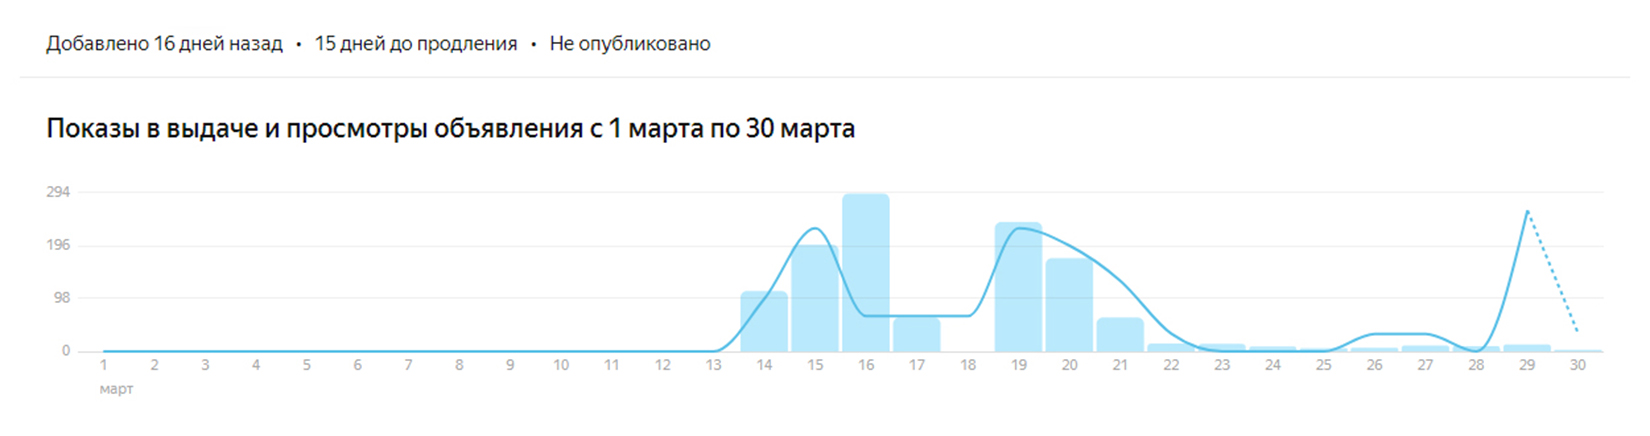 Так выглядит мертвый сезон аренды на «Яндекс-недвижимости». Упадок рынка я связываю с текущей экономической и геополитической нестабильностью. Источник: realty.yandex.ru